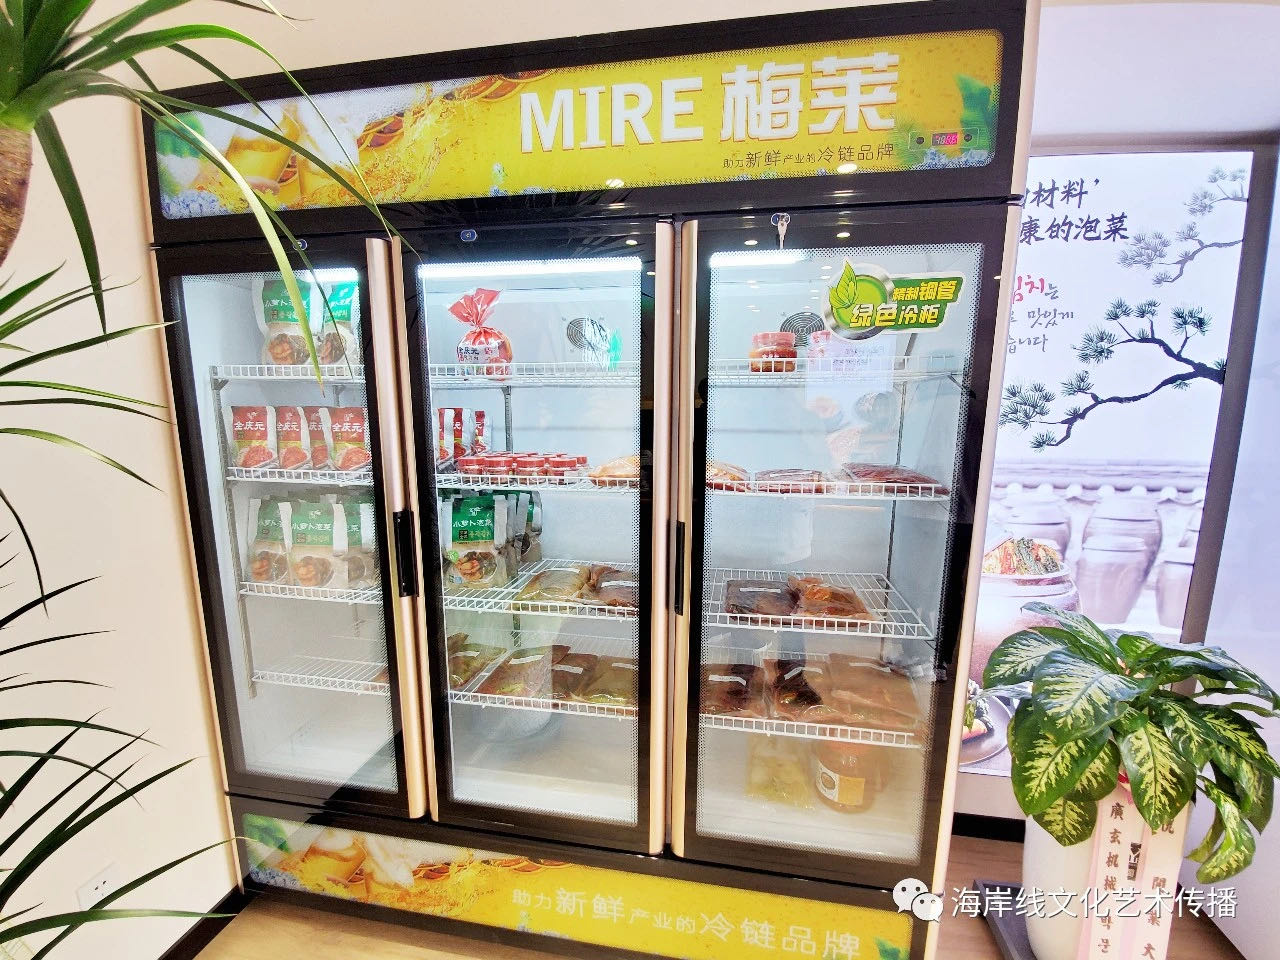 亚进食品青岛直营店成功开业